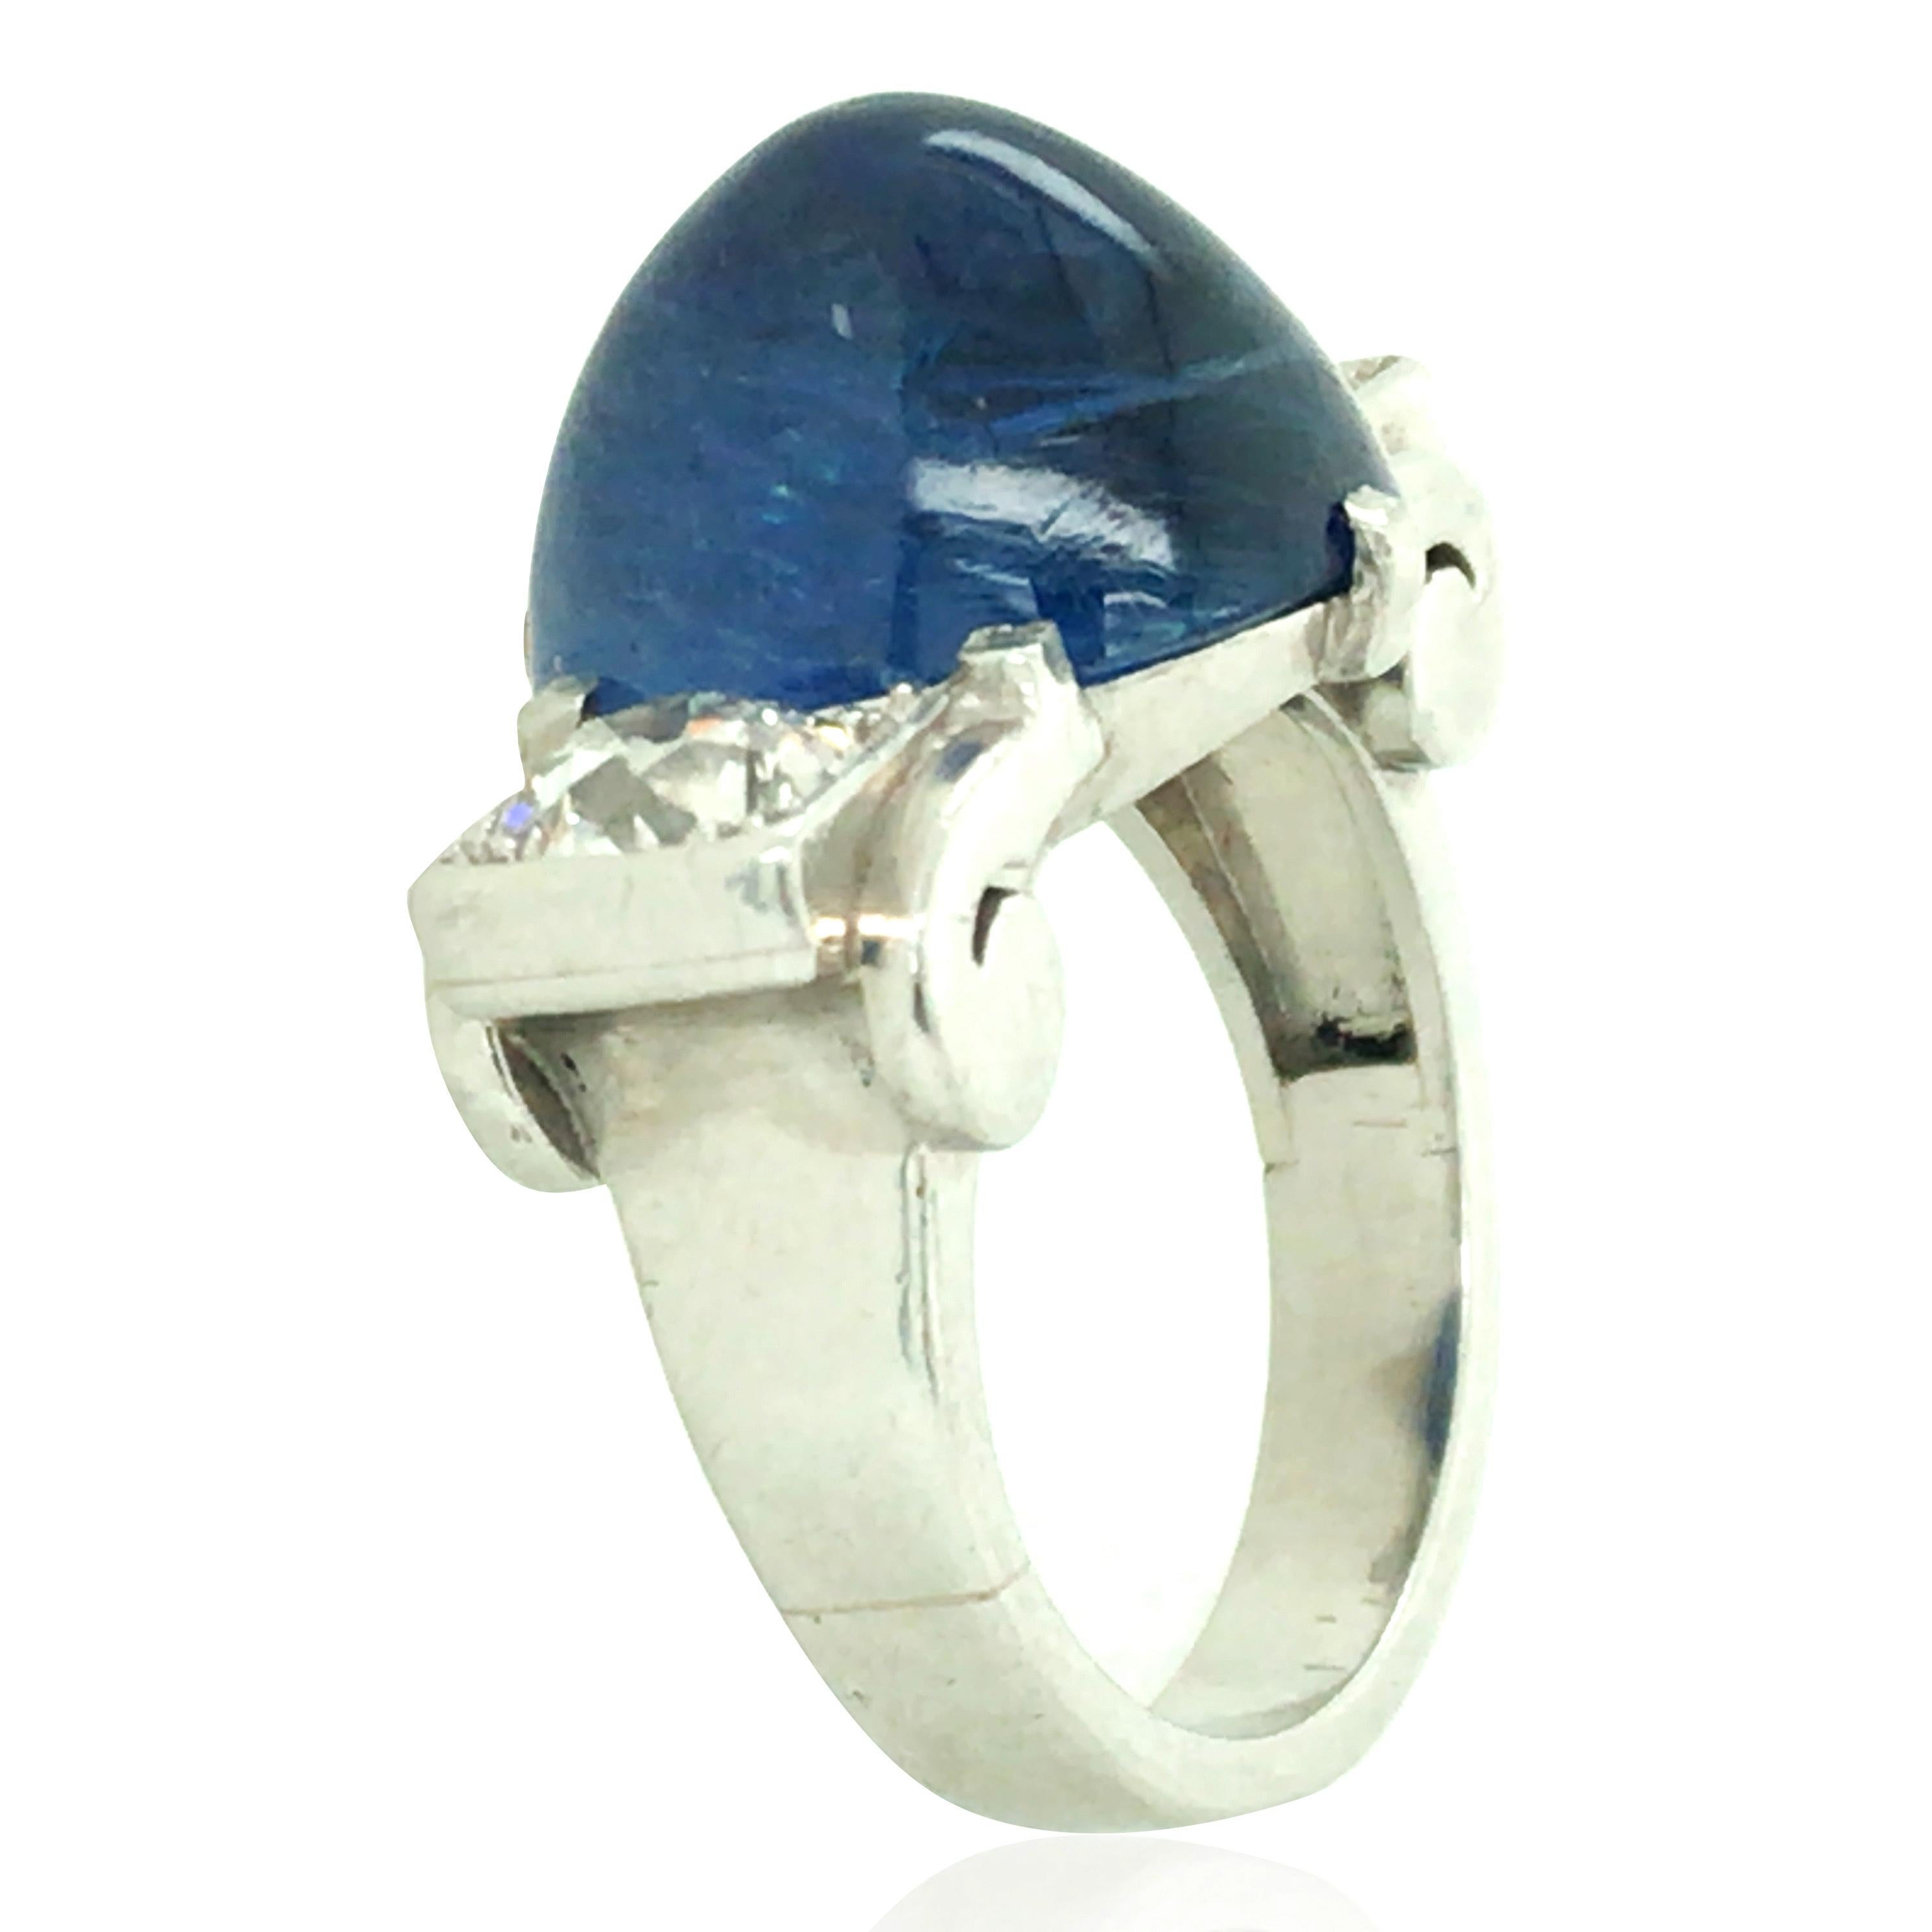 Dieser Ring besteht aus einem Saphir im Cabochon-Schliff von 14,61 Karat und zwei Diamanten im Rundschliff. Diamant insgesamt ca. 1ct. Ringgröße: 5.75

Saphir: 14,61ct
Diamant: 1,3ct
Gewicht: 13,4 Gramm